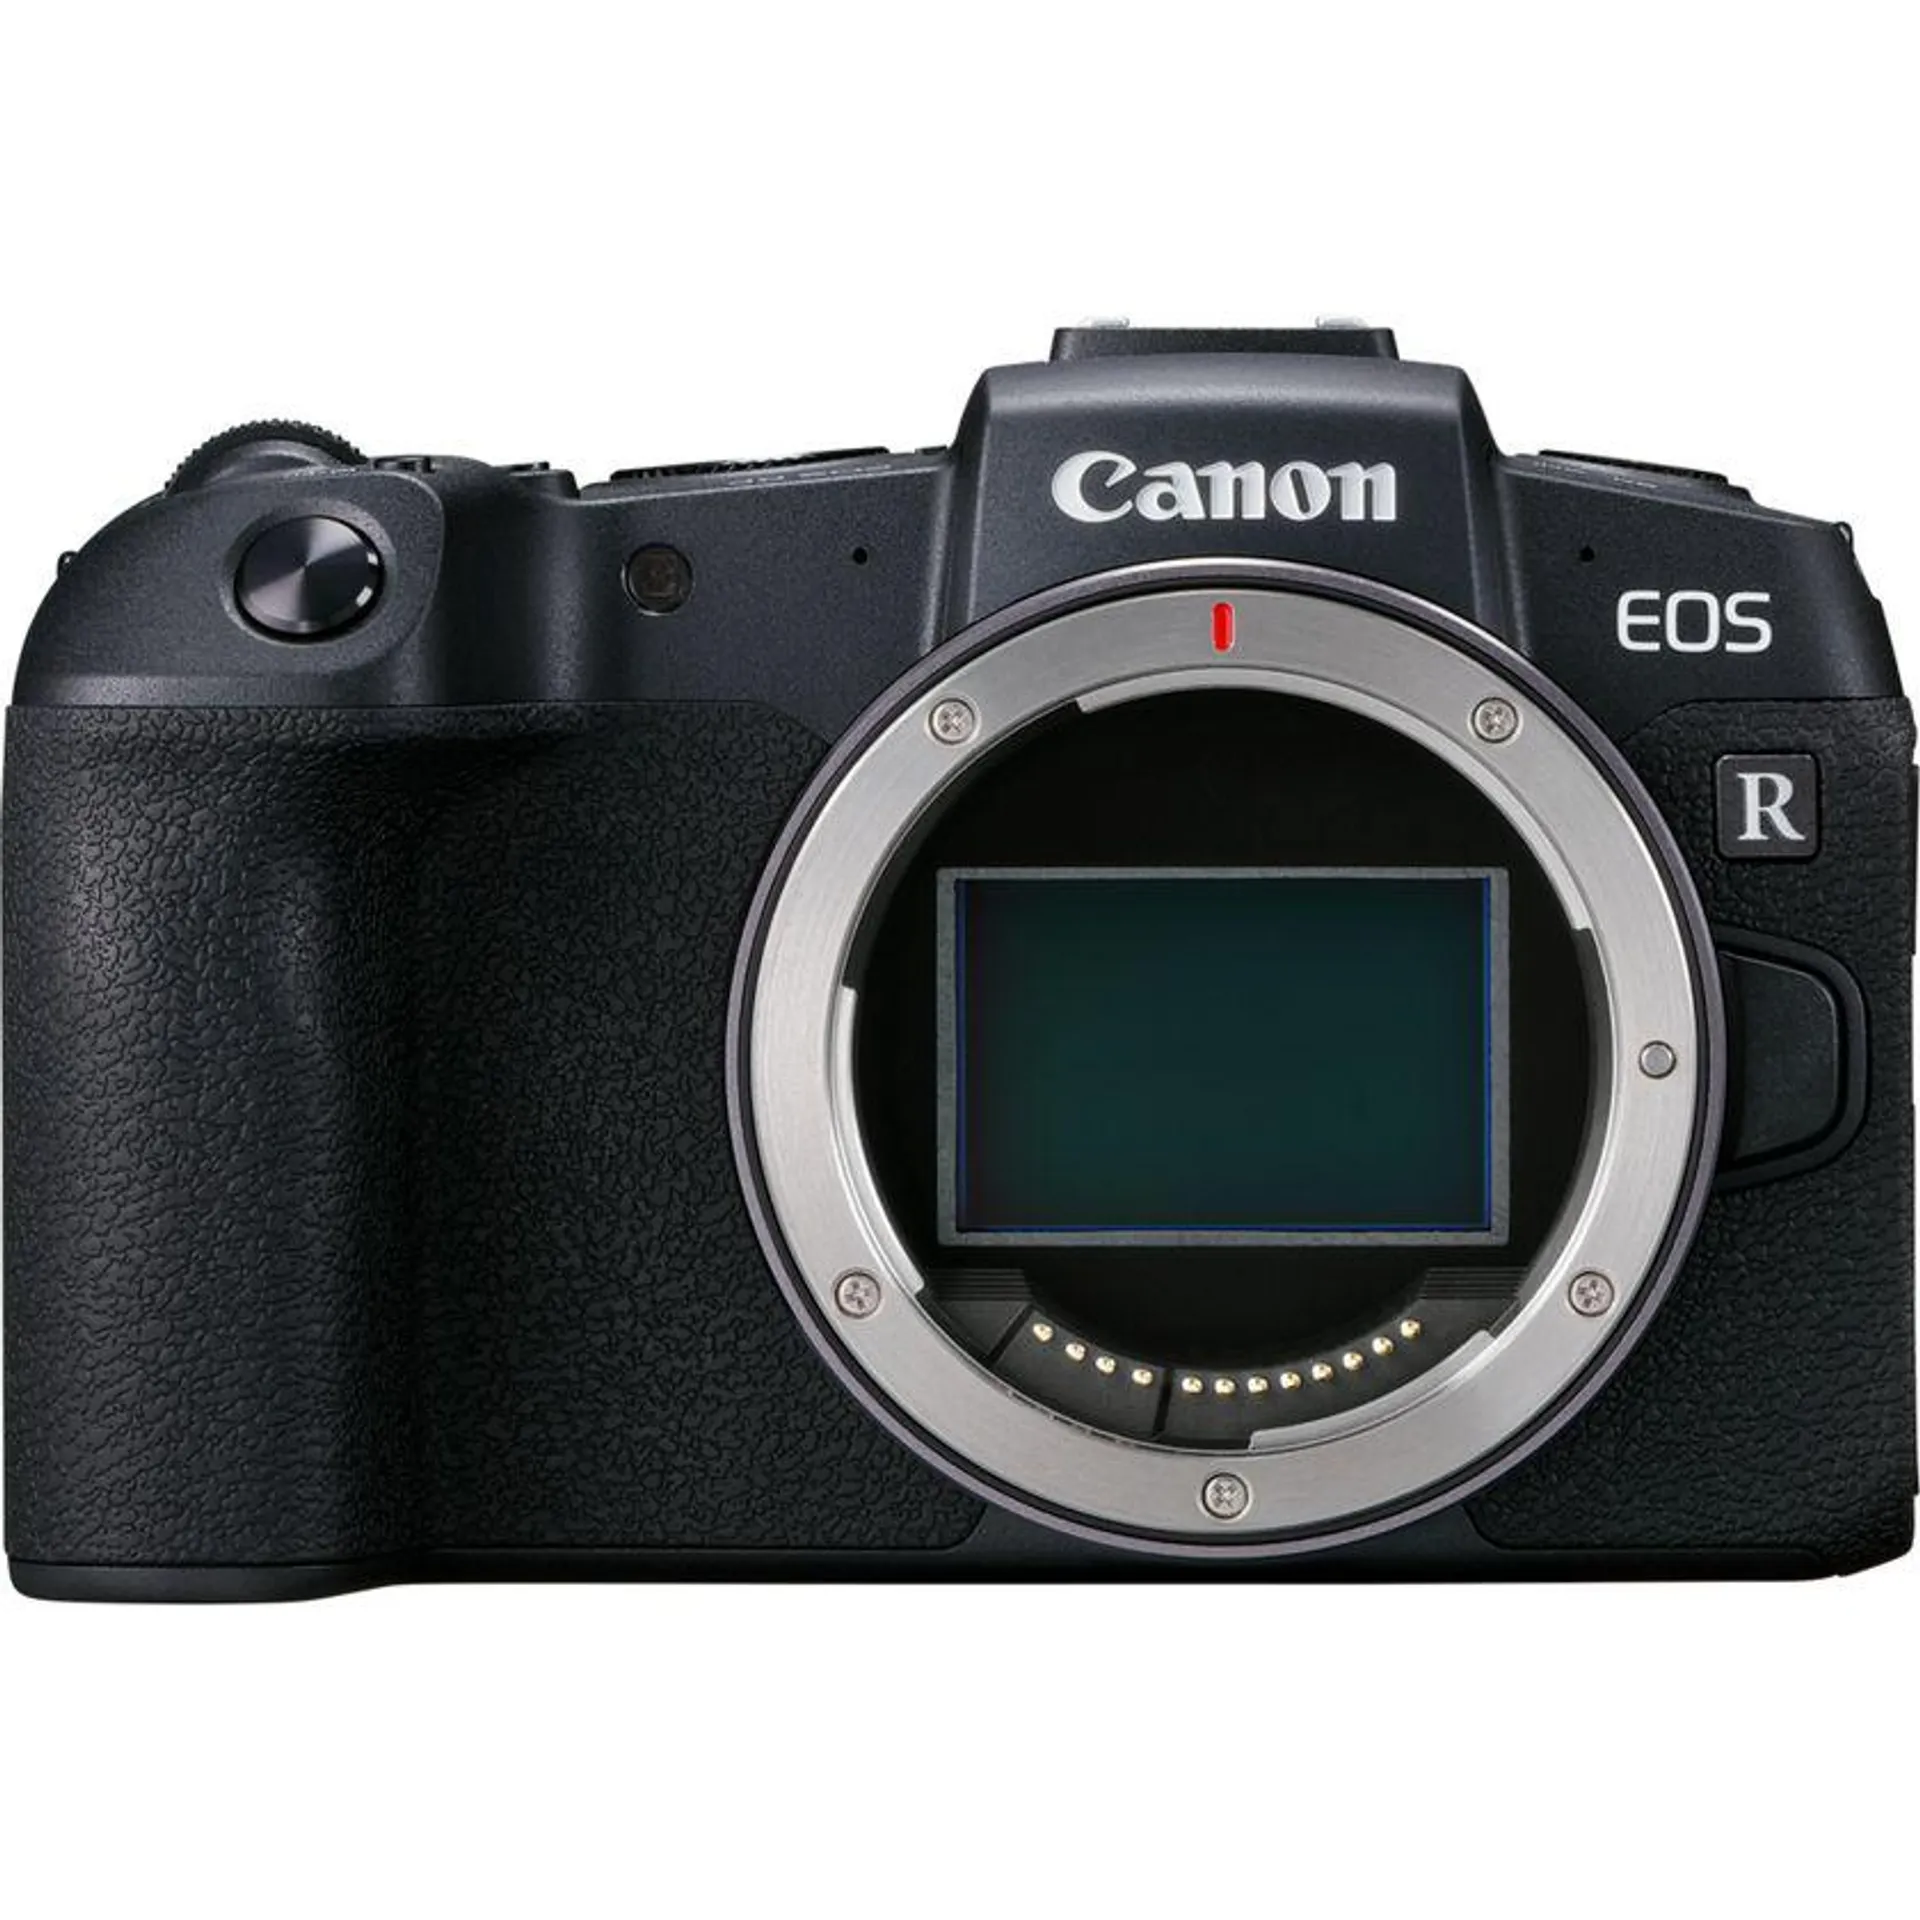 Cuerpo de la cámara mirrorless EOS RP de Canon